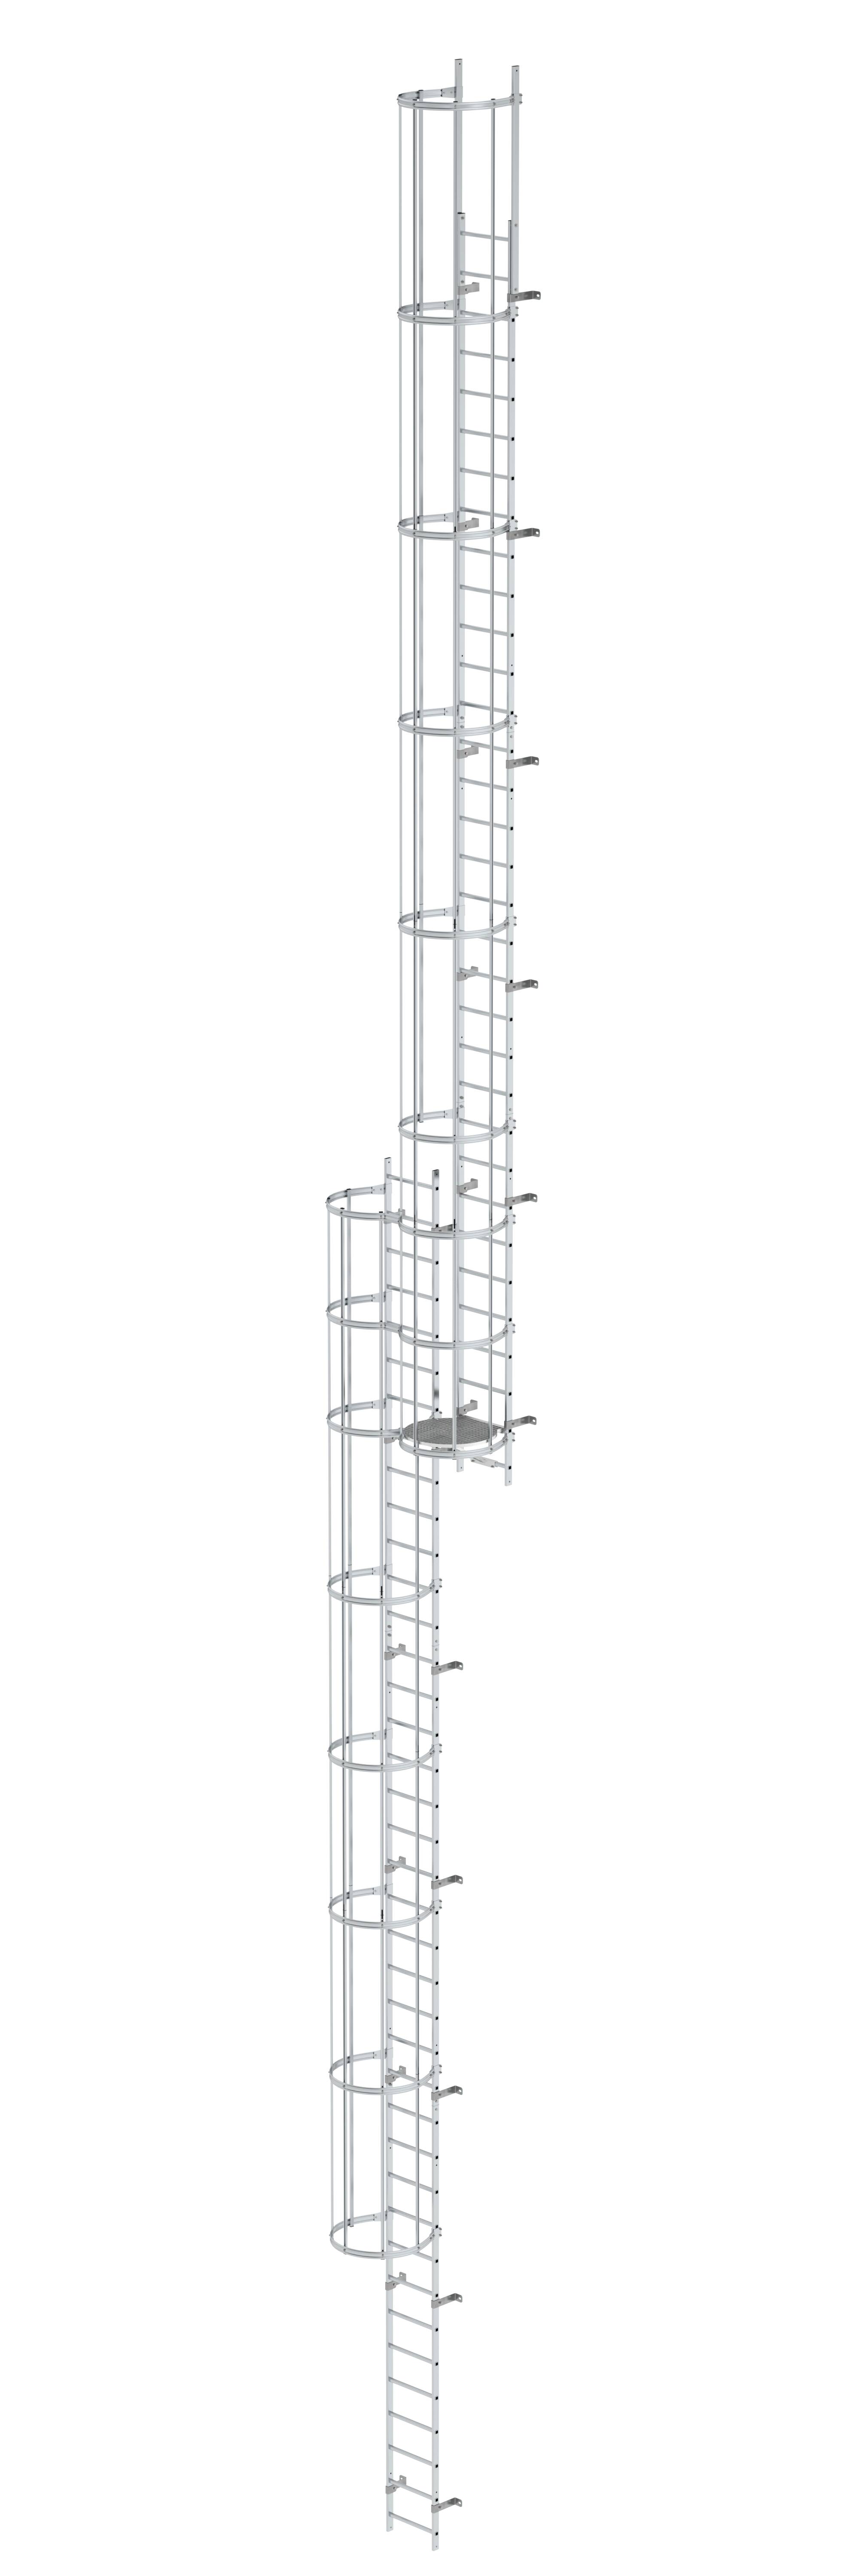 MUNK Mehrzügige Steigleiter mit Rückenschutz (Bau) Aluminium blank  